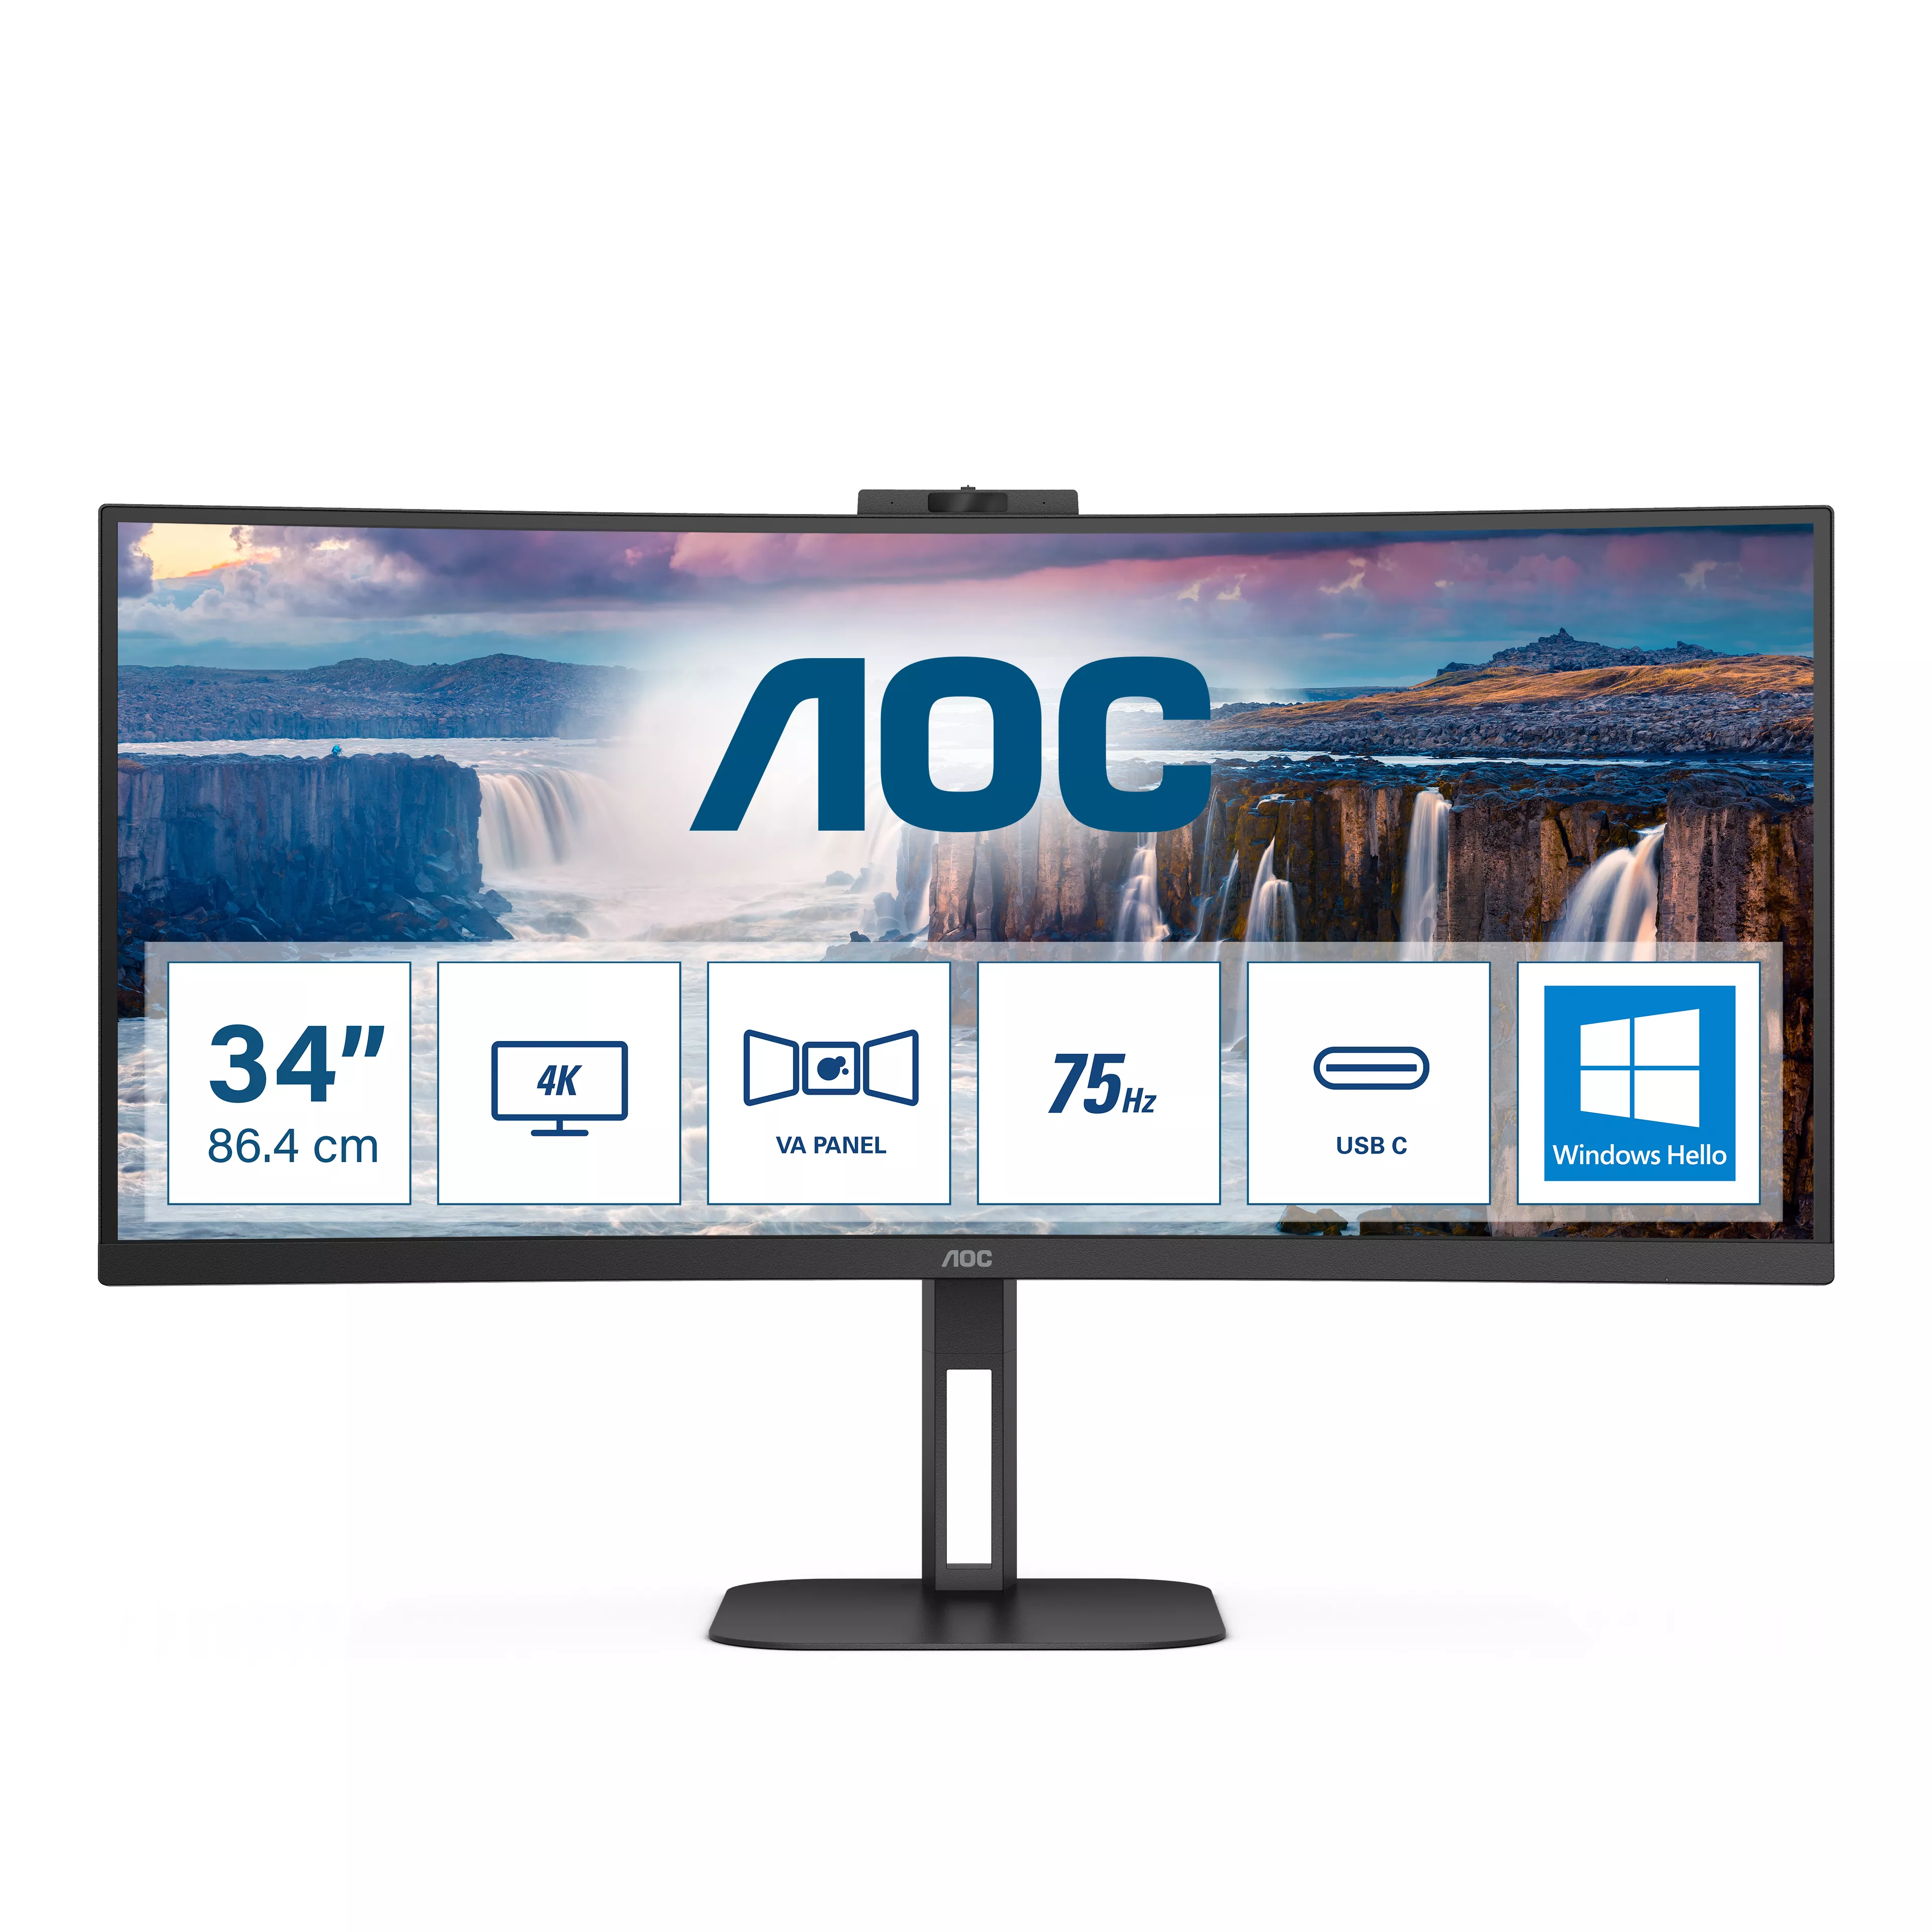 Achat AOC CU34V5CW/BK 34p monitor HDMI DP USB et autres produits de la marque AOC